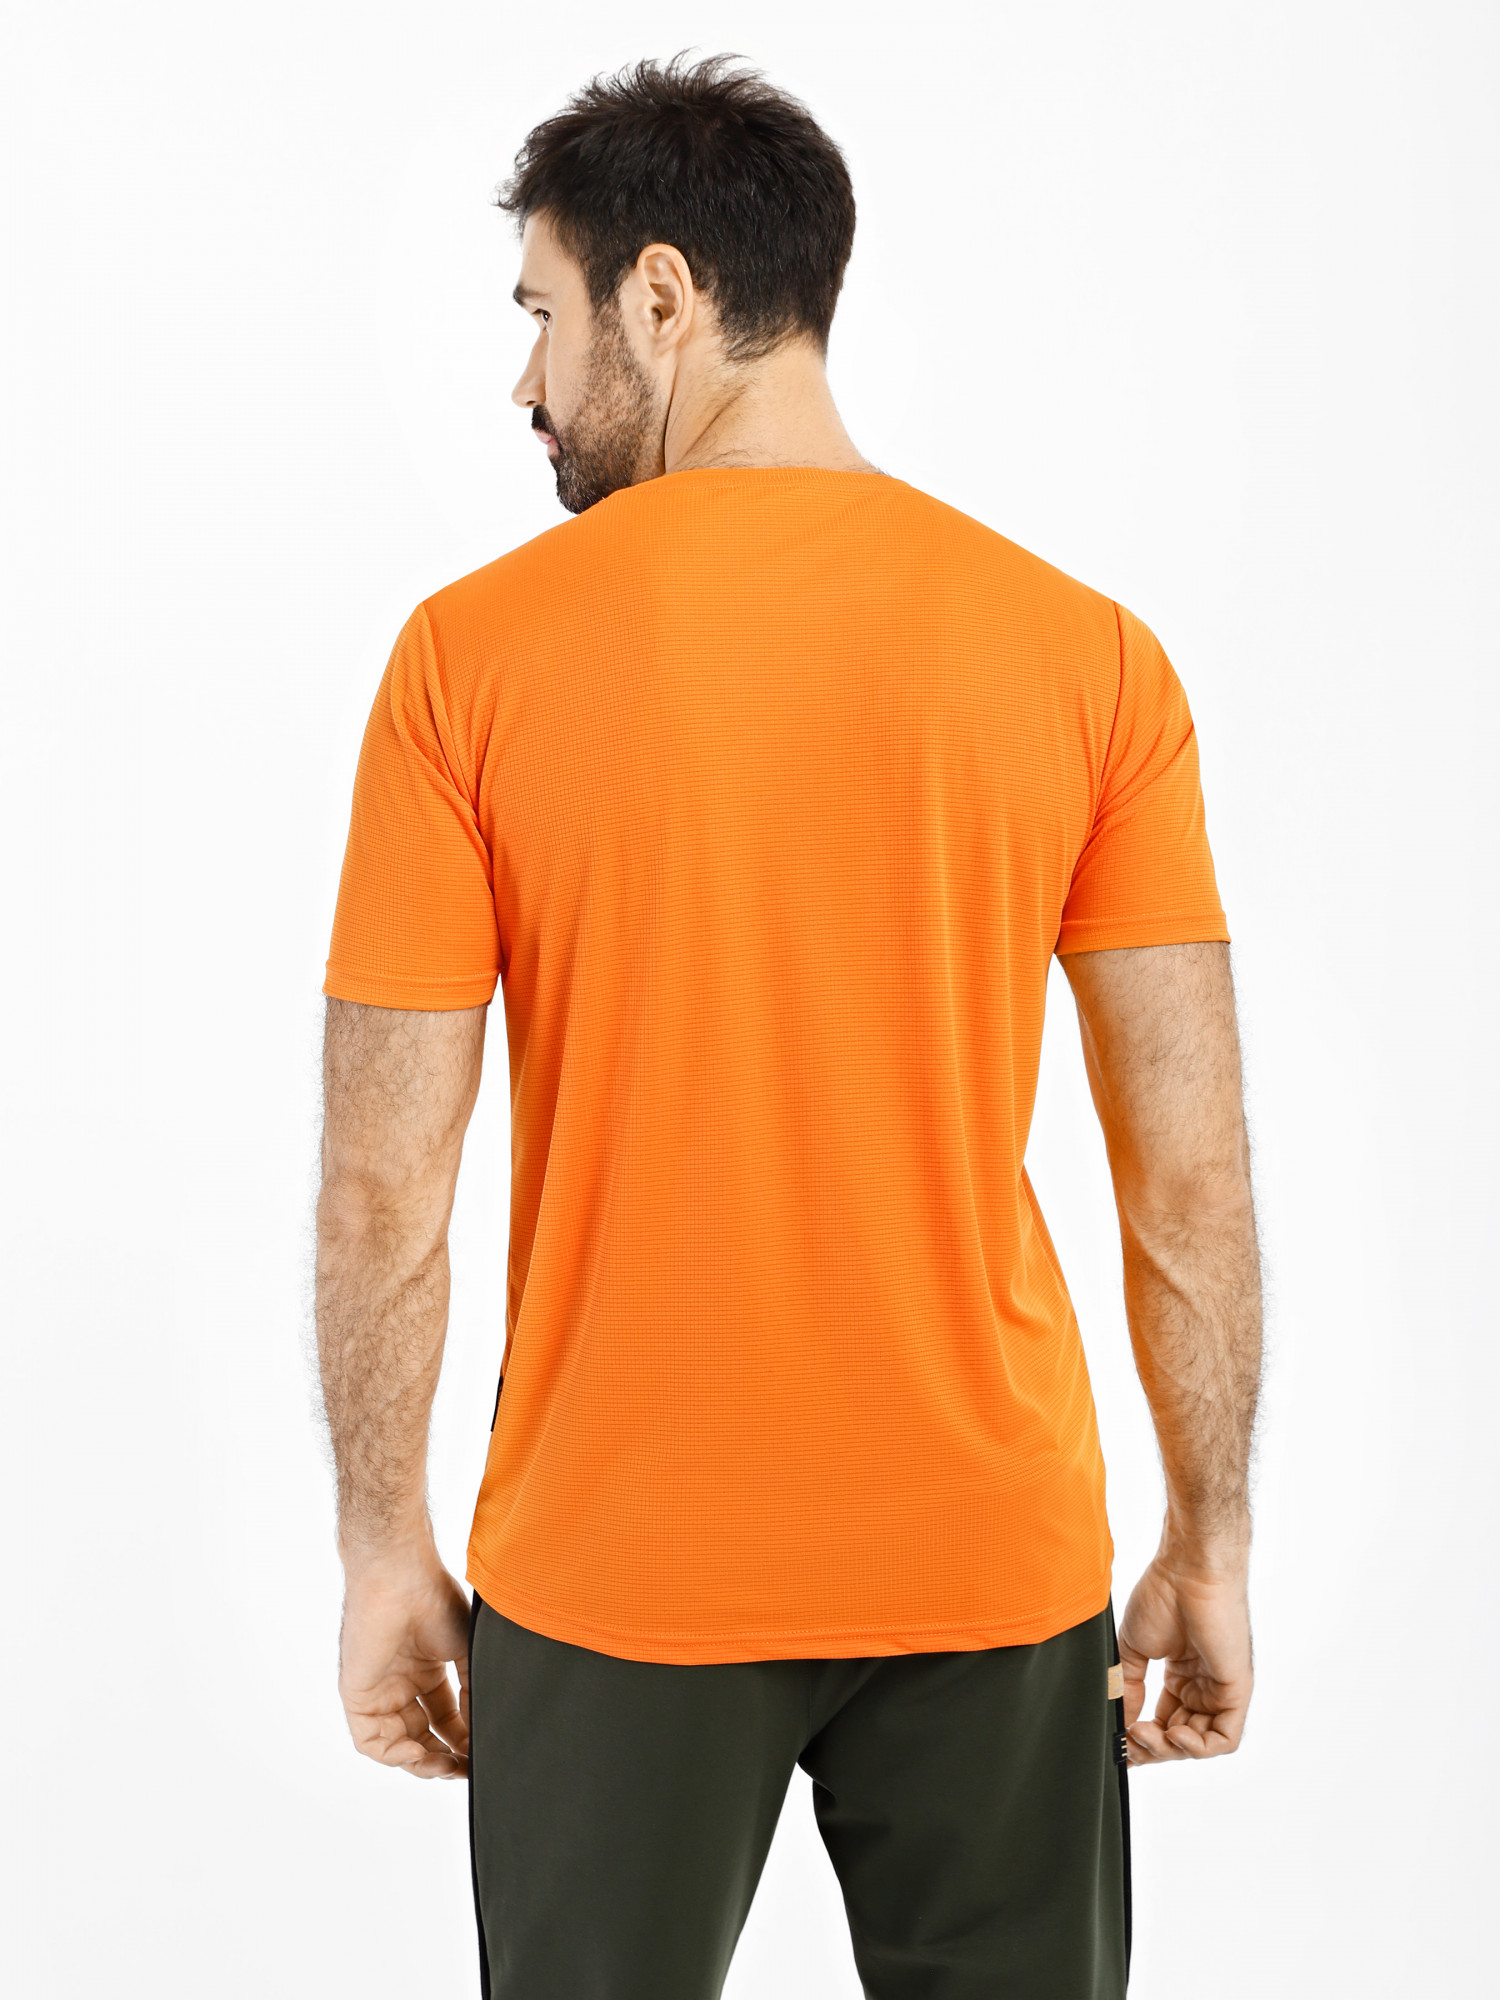 Футболка мужская Radder Bargot оранжевая 120015-840 изображение 2